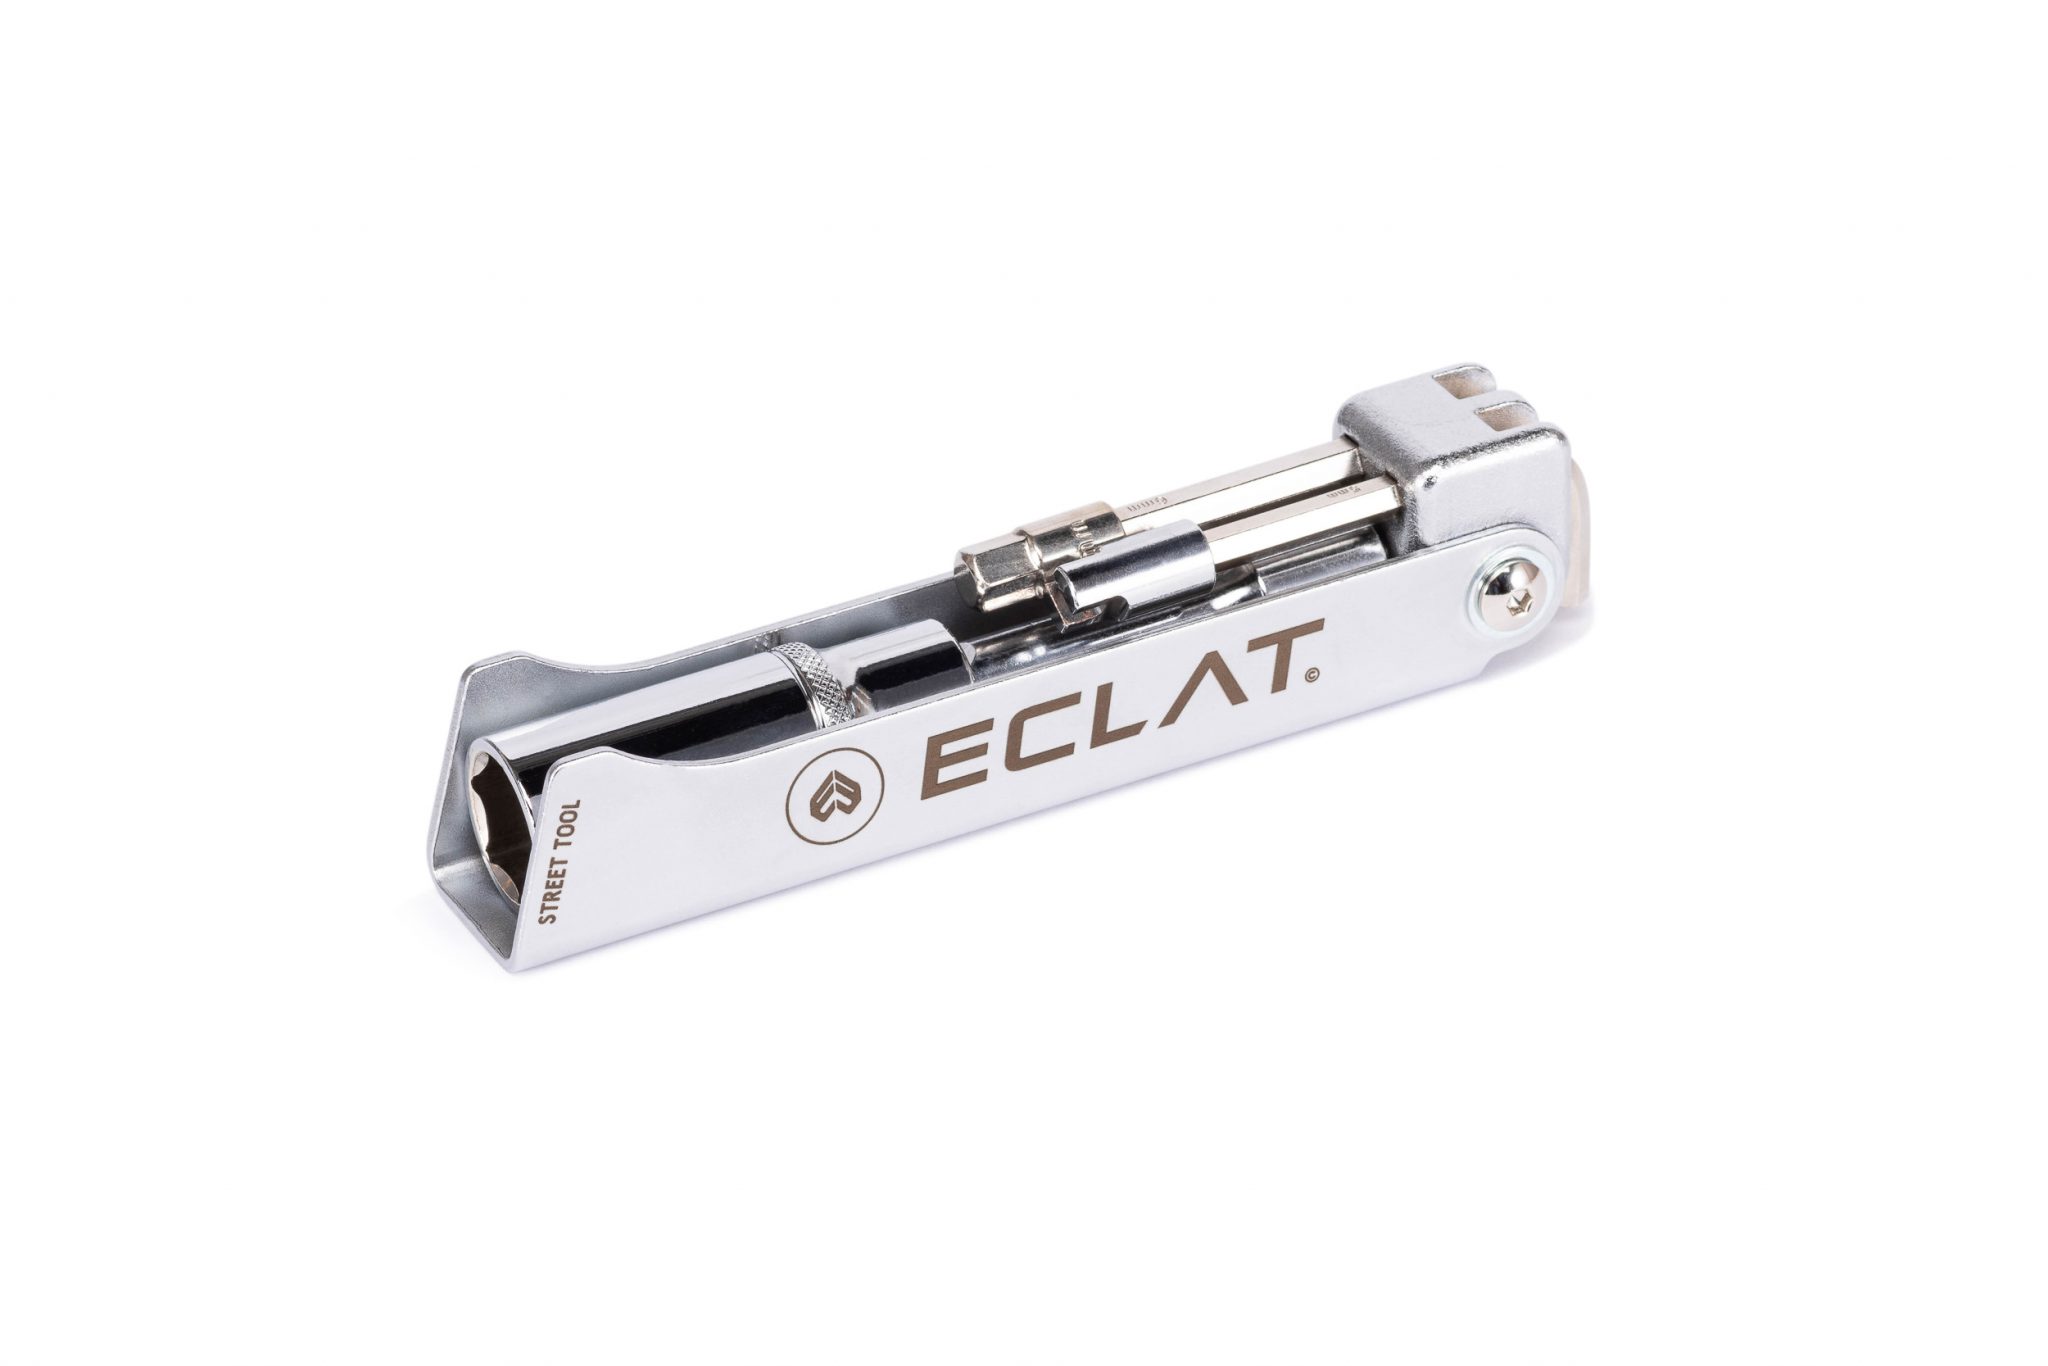 Eclat_Street_tool-02-2048x1366